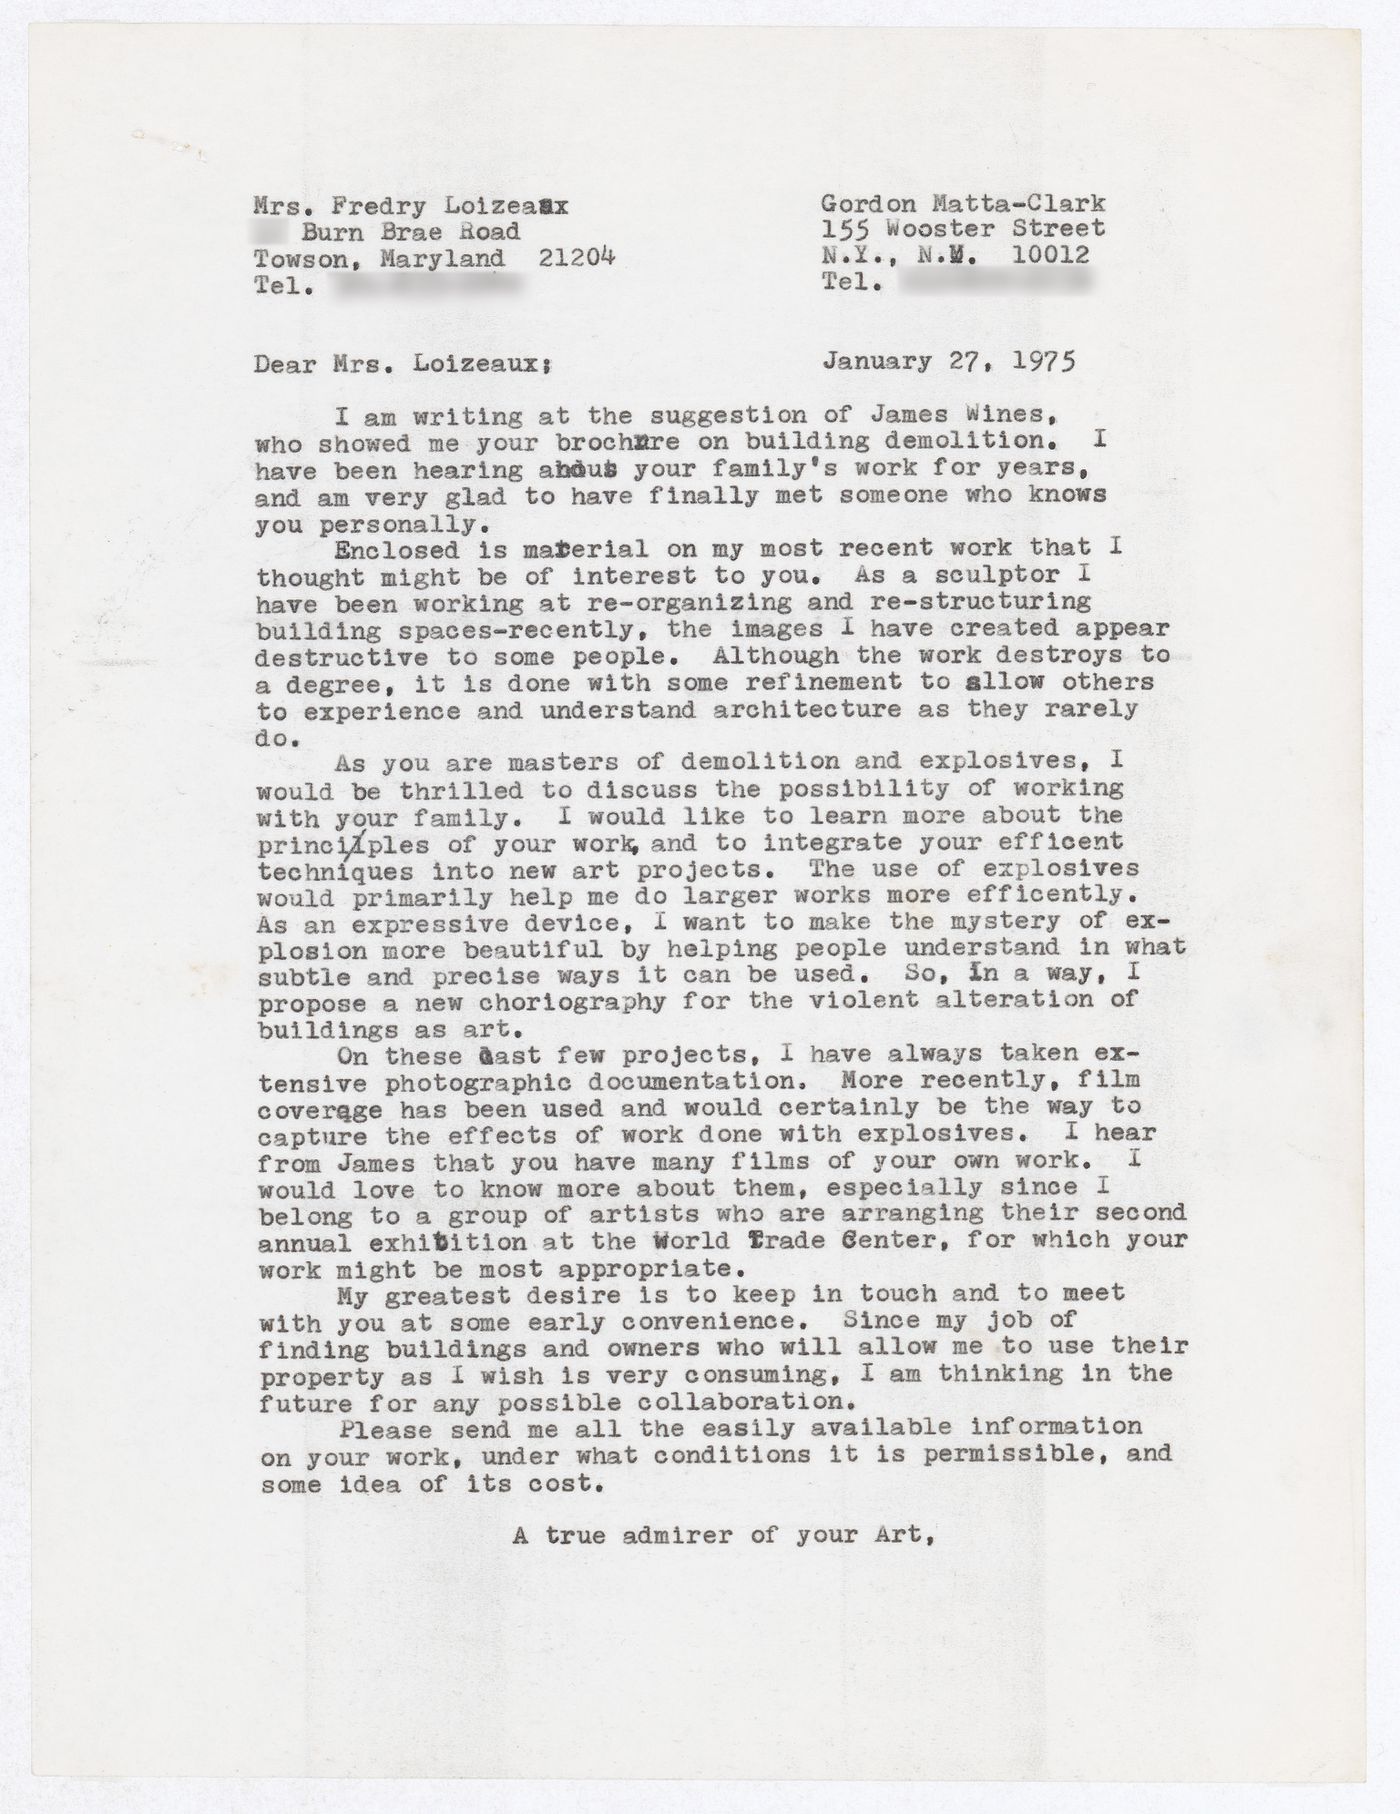 Letter from Gordon Matta-Clark to Fredry Loizeaux